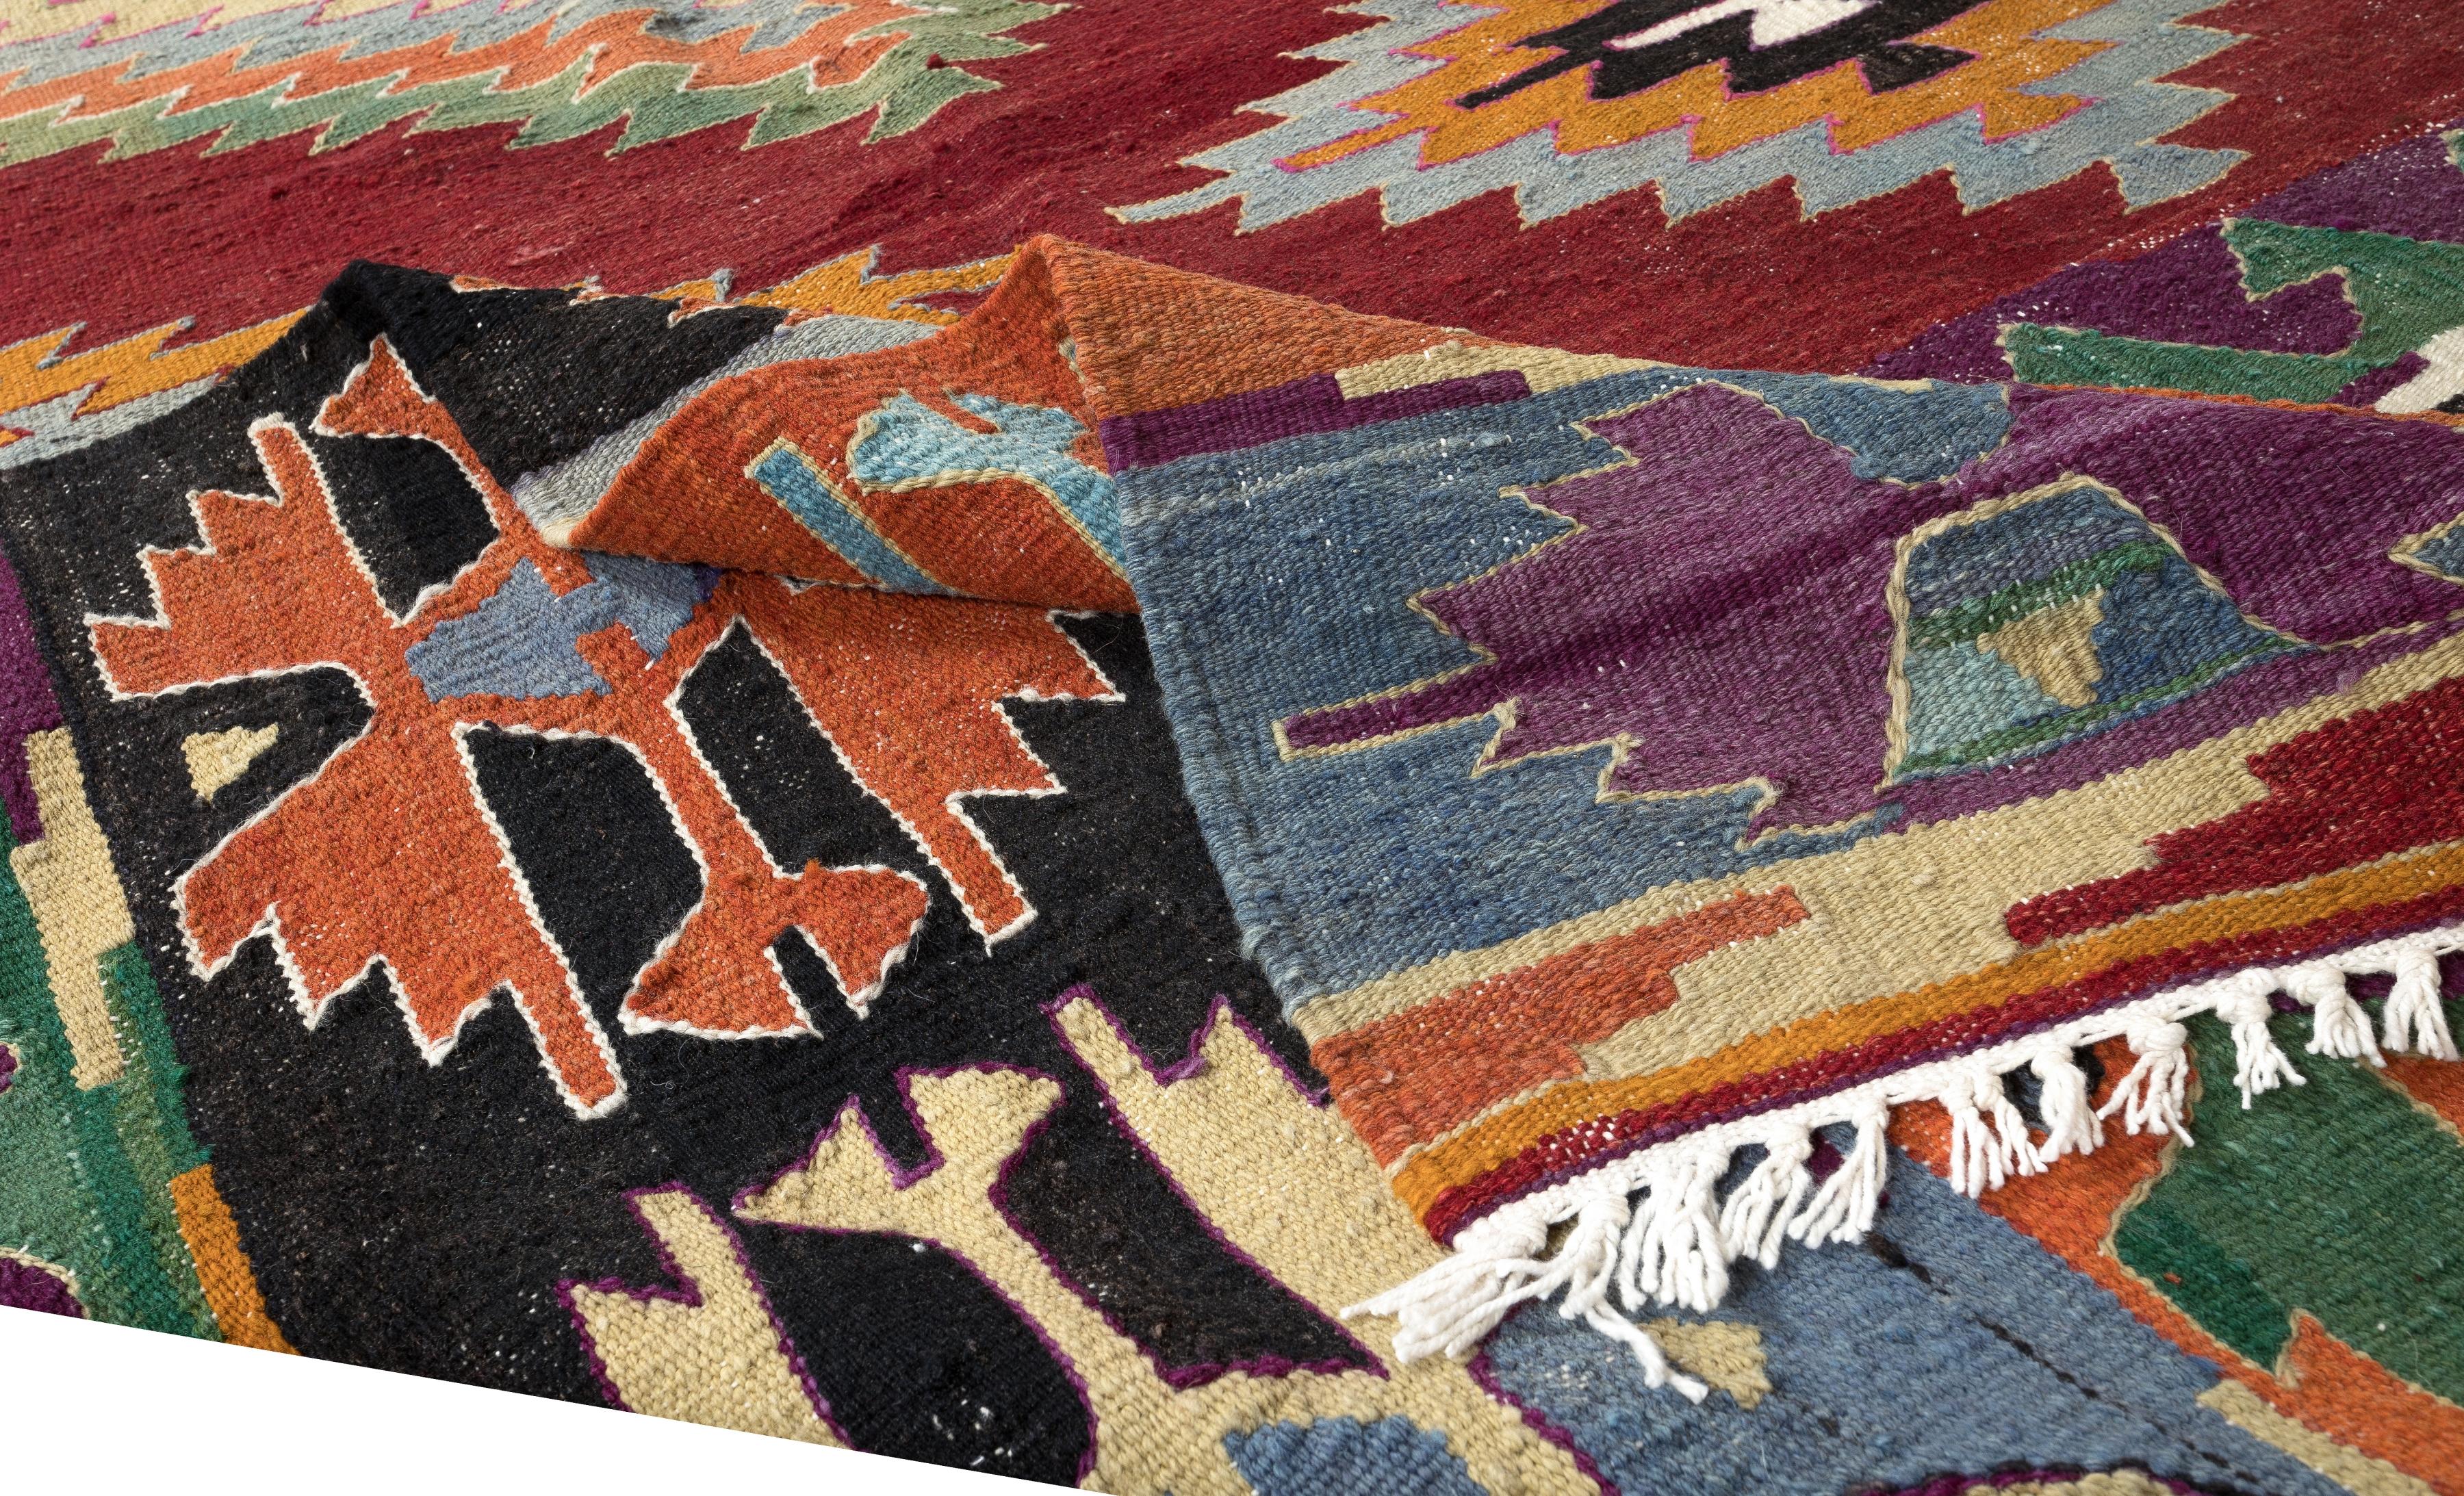 Dieser authentische handgewebte Teppich wurde von den Dorfbewohnern in Zentralanatolien verwendet. 100% Bio-Wolle. 
Guter Zustand und professionell gereinigt.
Ideal für private und gewerbliche Innenräume.
Wir können auf Wunsch ein passendes Pad für